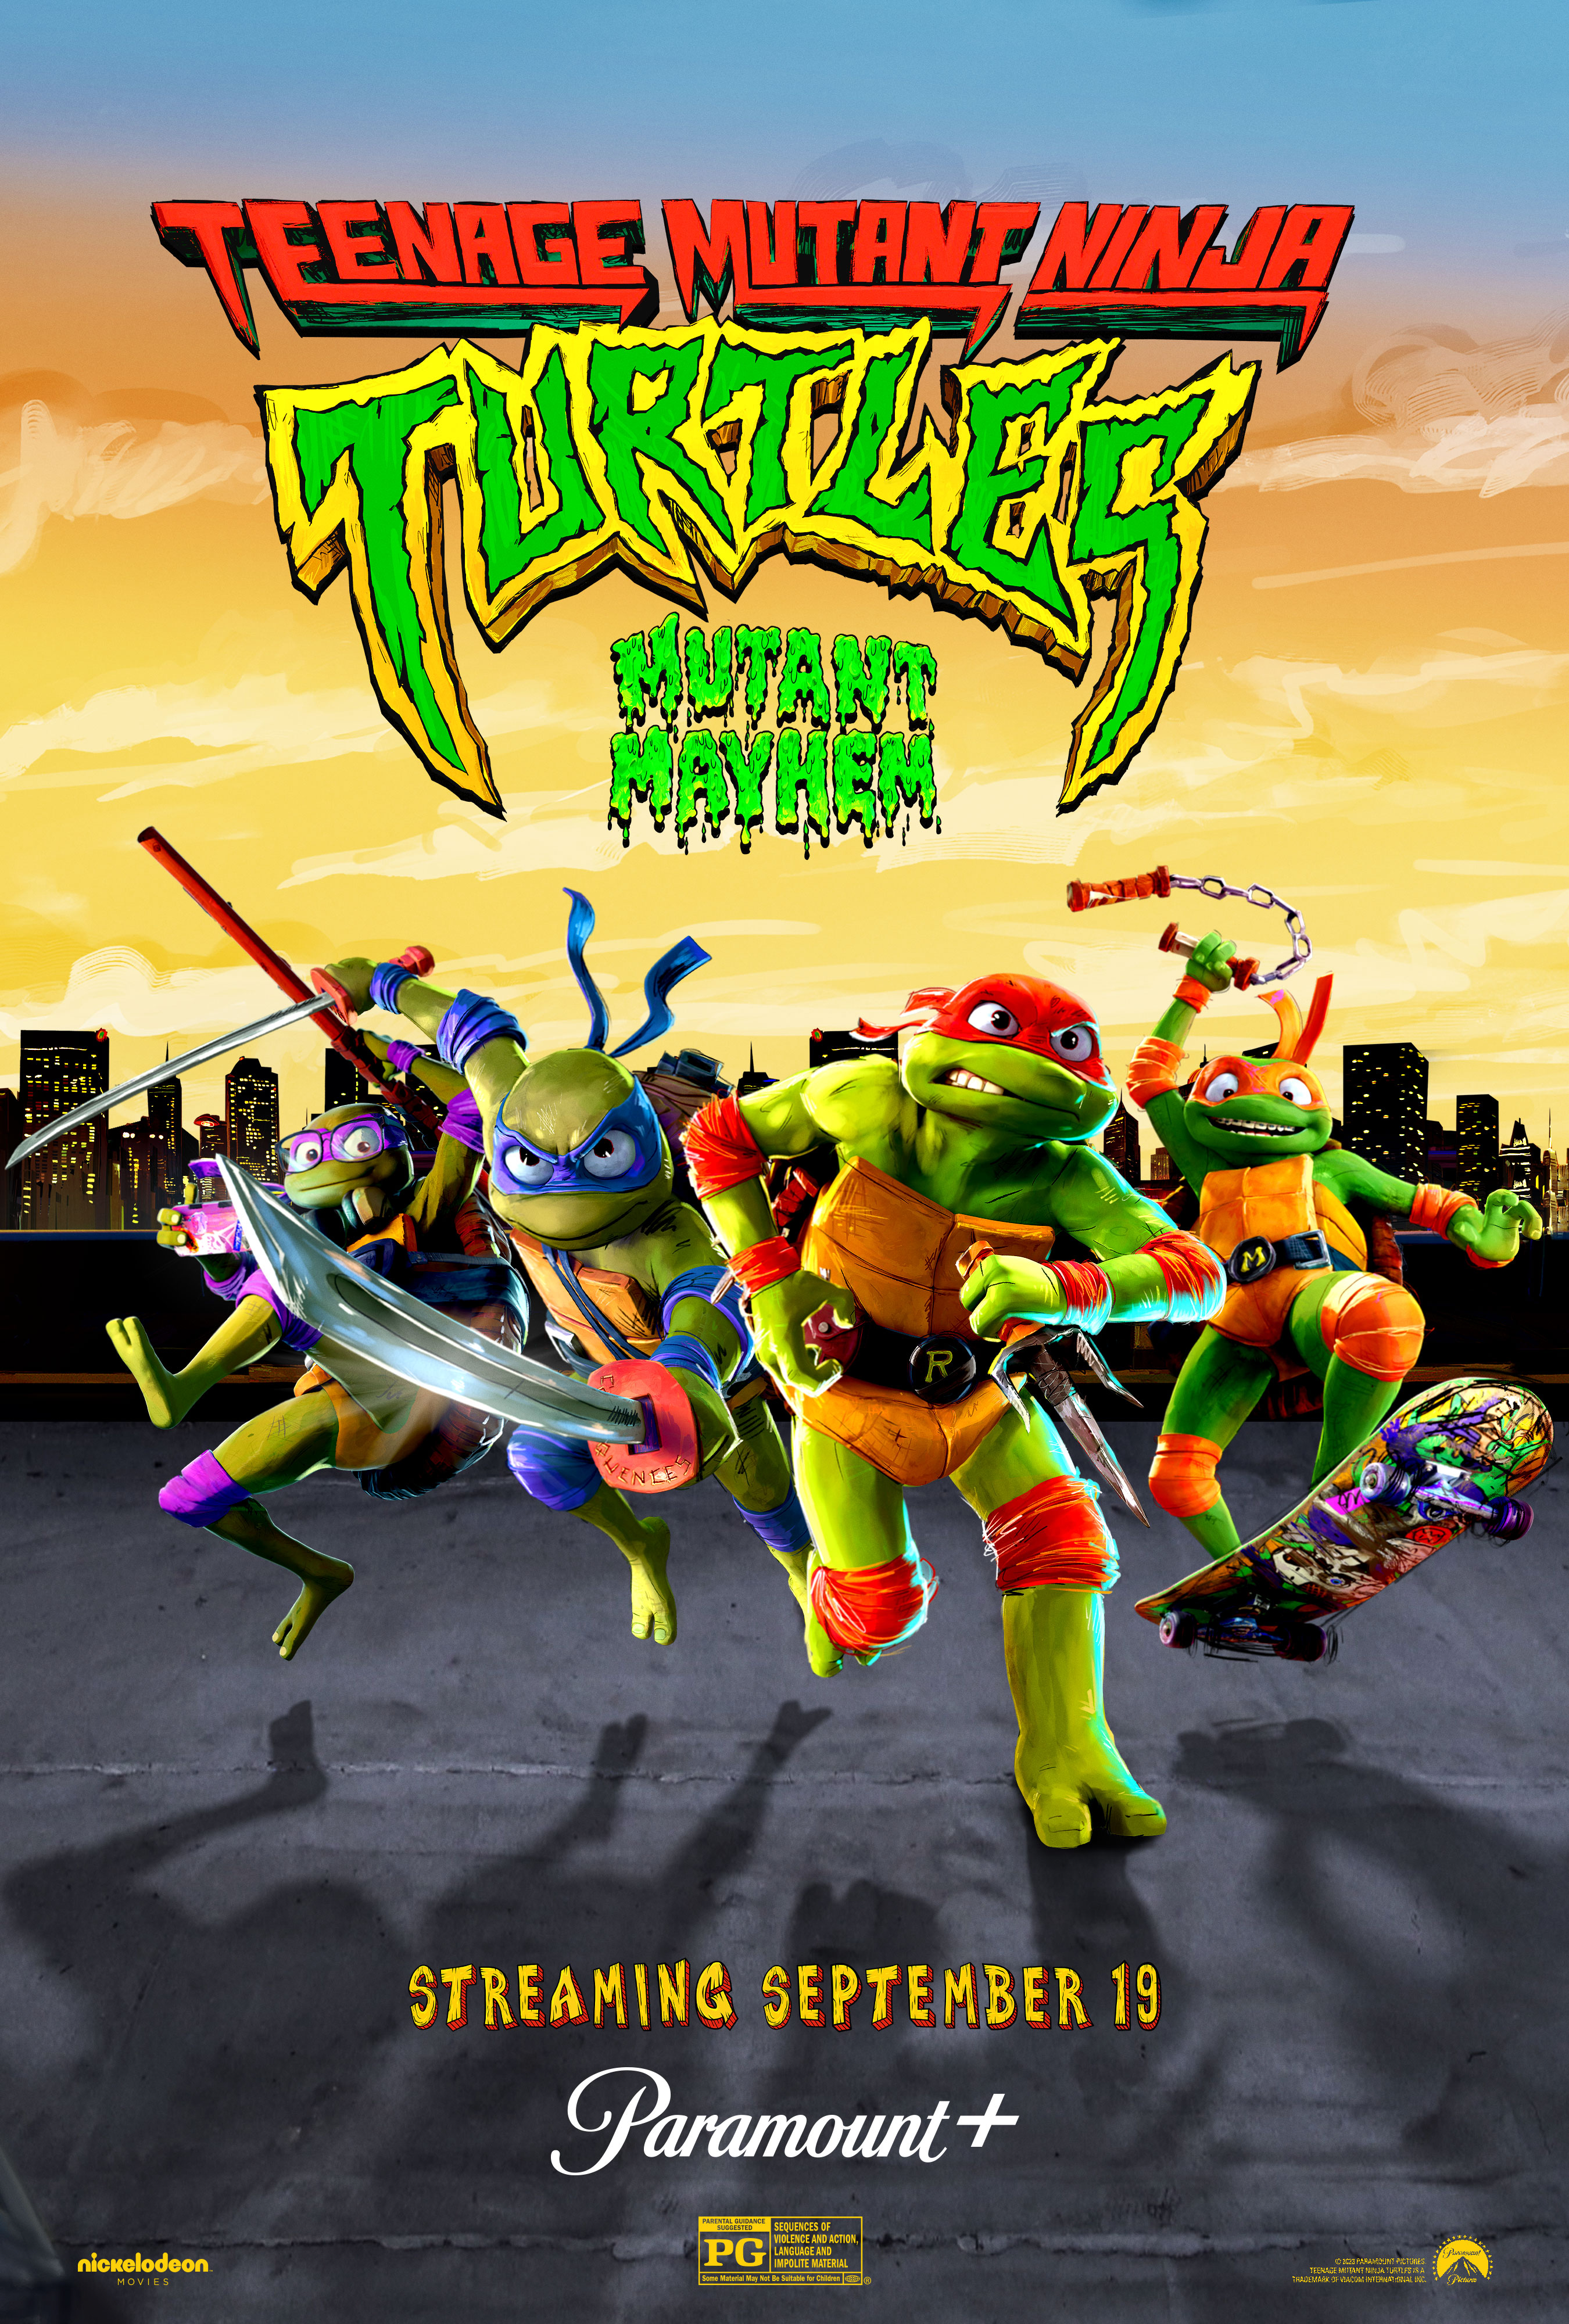 Ninja Turtles/Gallery  Teenage mutant ninja turtles movie, Tmnt, Teenage  mutant ninja turtles art